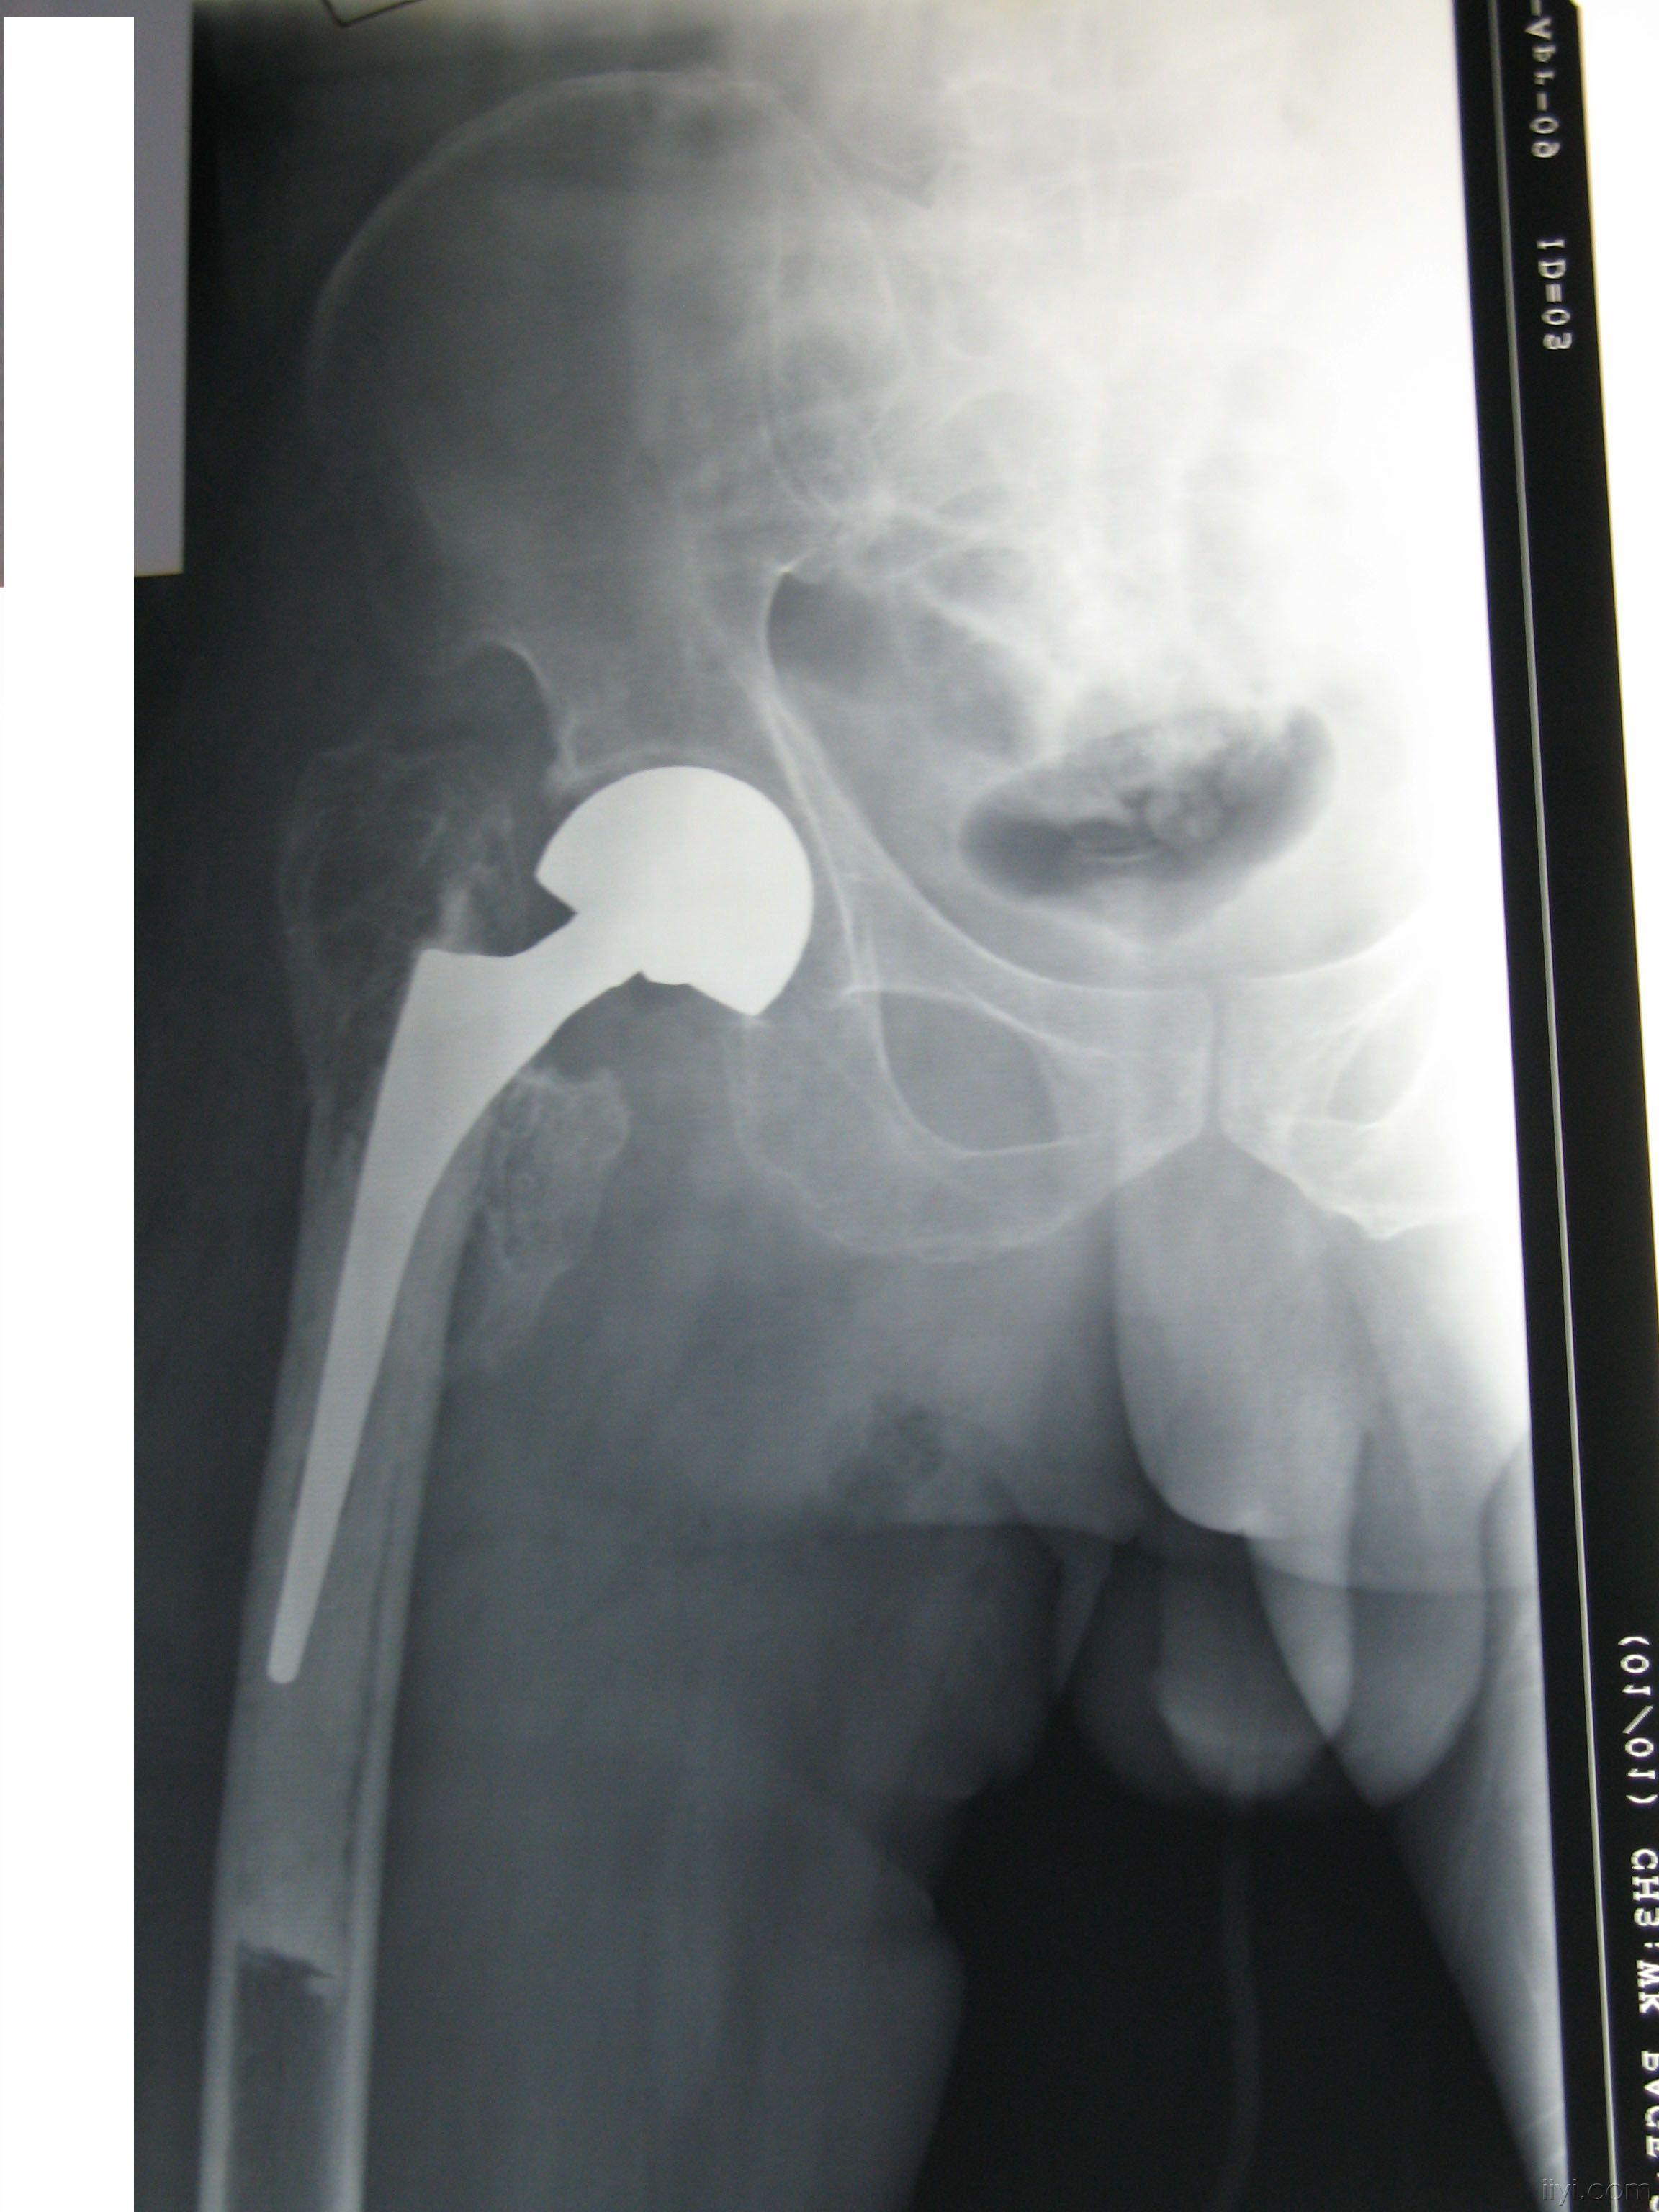 股骨粗隆间骨折畸形愈合股骨头置换术后